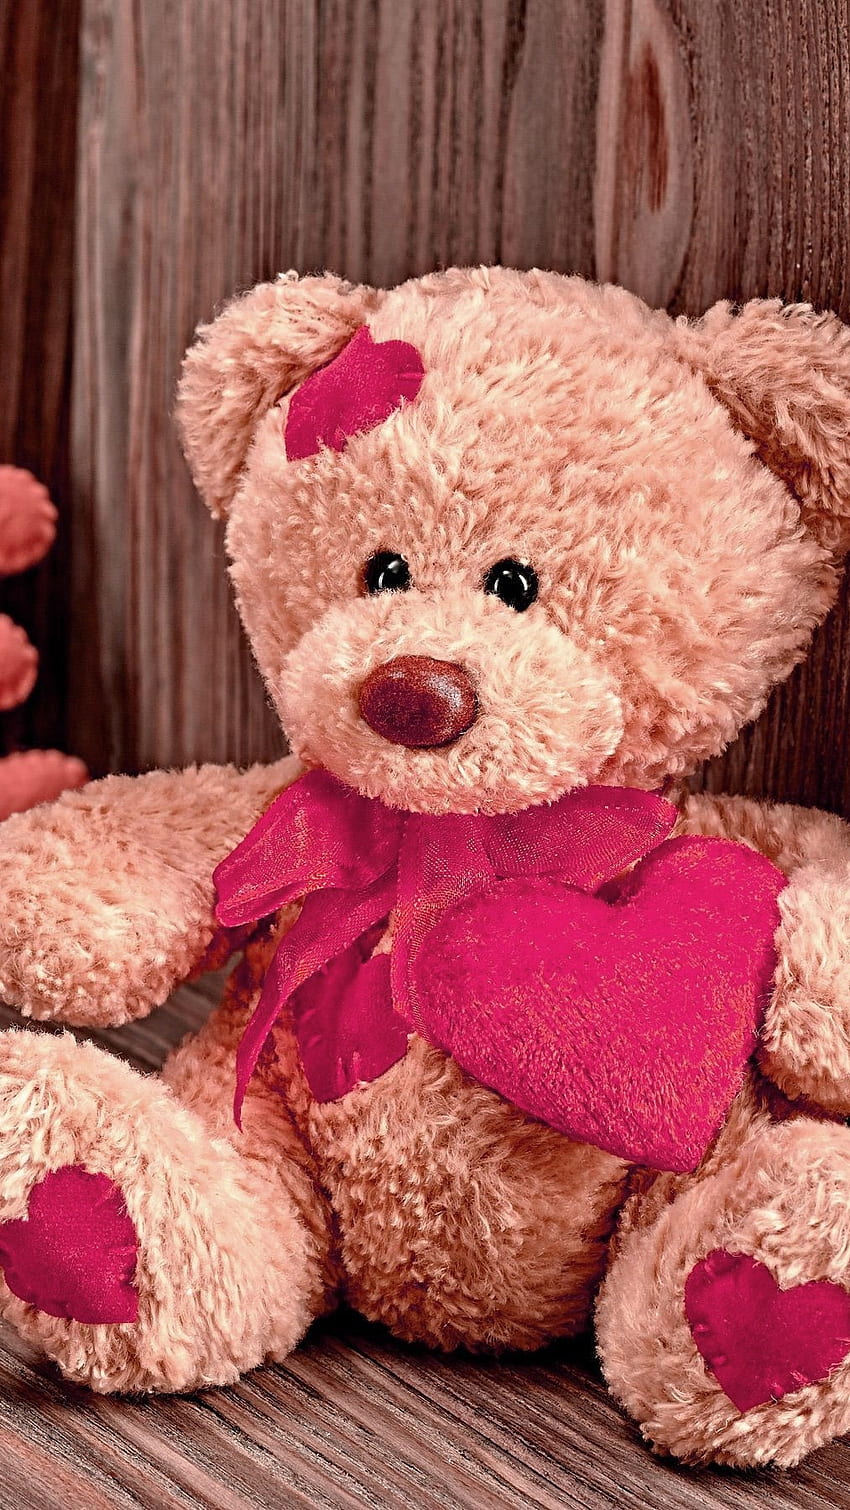 Cute love teddy bear HD wallpapers | Pxfuel